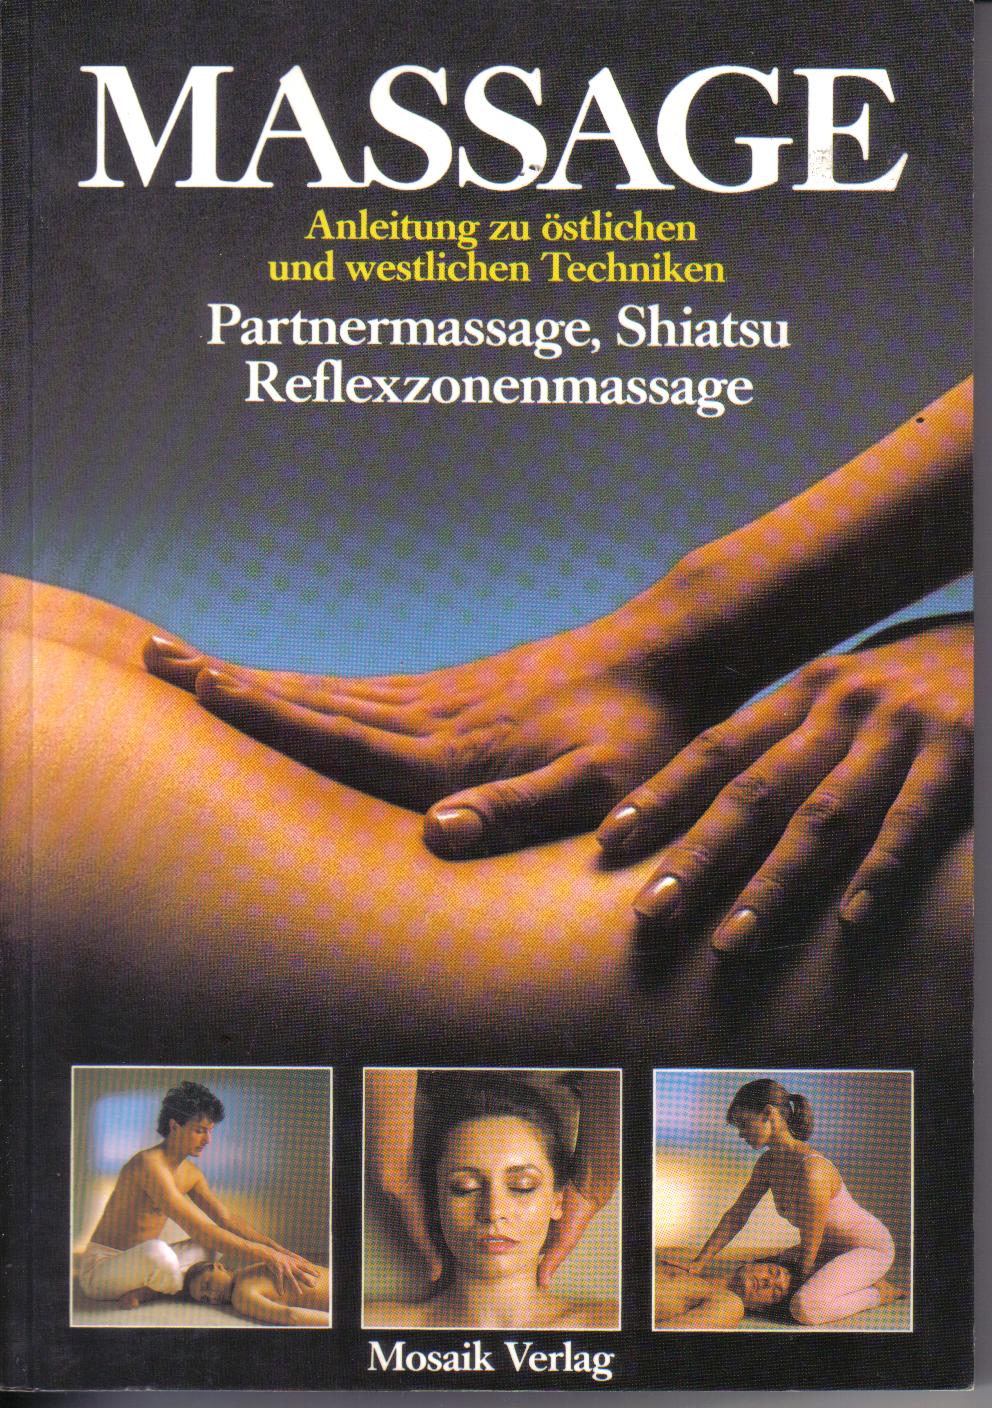 Massage Anleitung zu oestlichen und westlichen Techniken -Partnermassage, Shiatsu , ReflexzonenemassageLidell / Thomas / Beresford Cooke / Porter